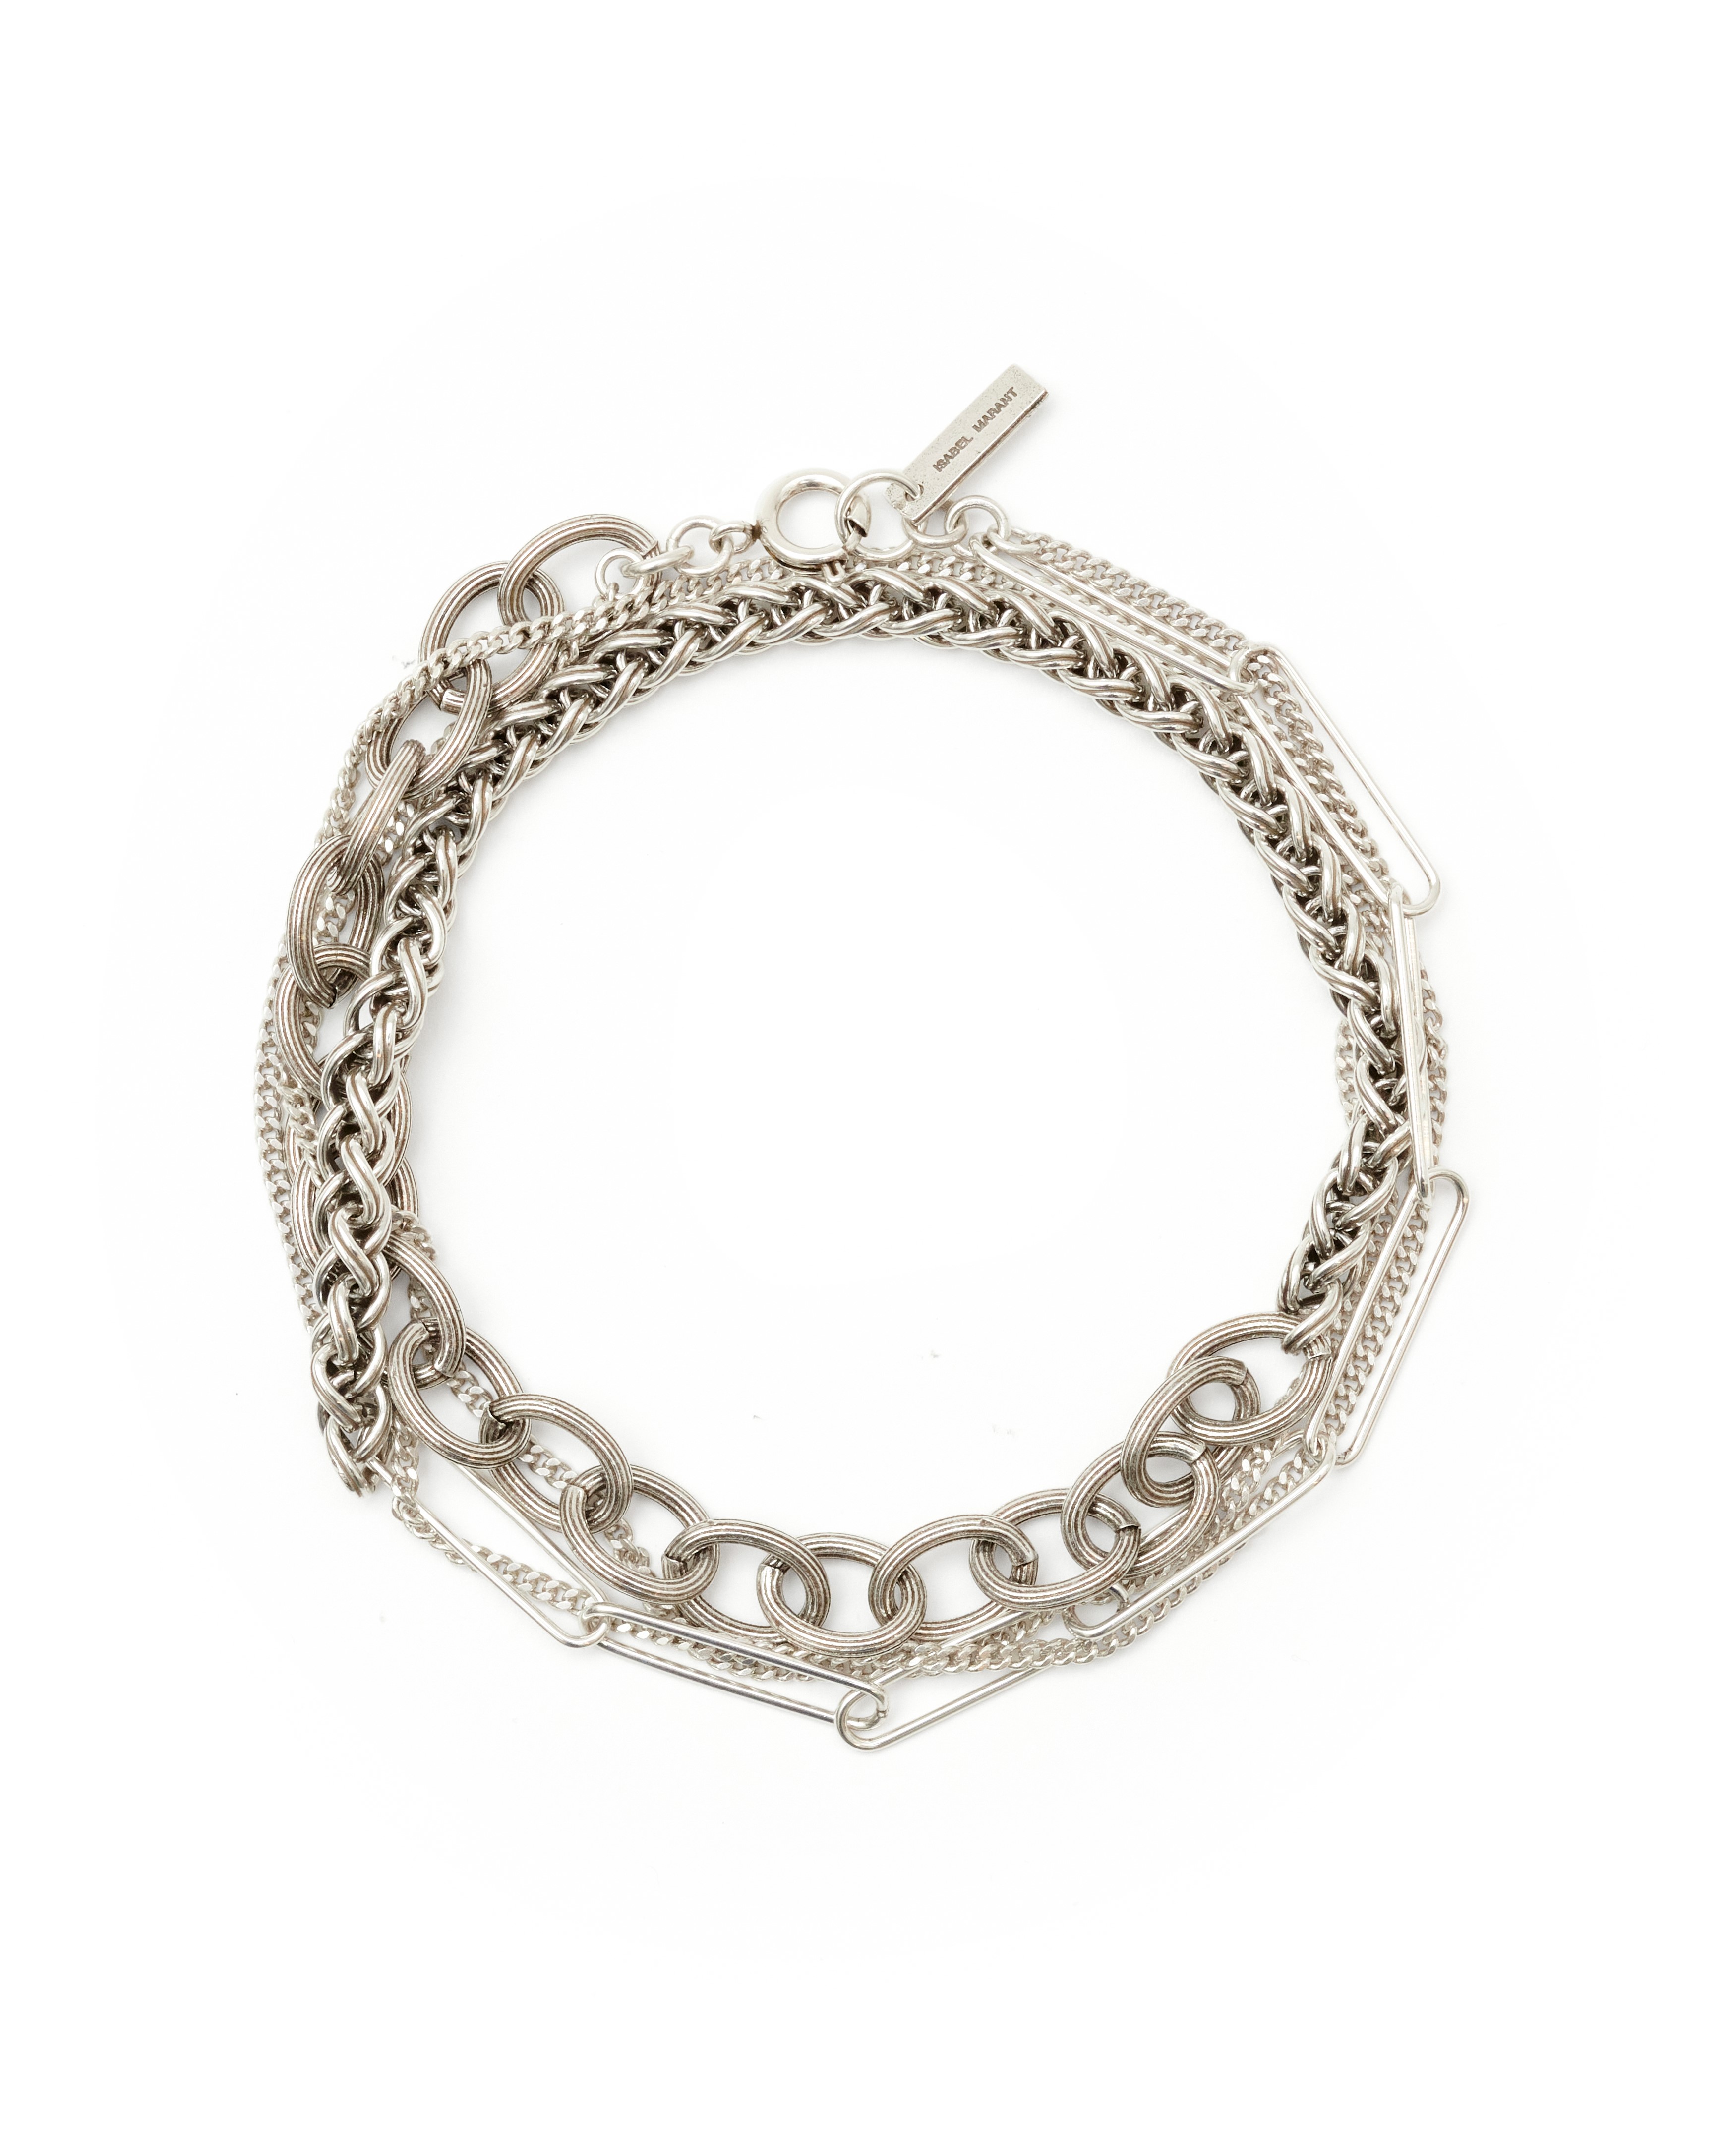 Isabel Marant Wrap Bracelet in Silver T2 / 54cm